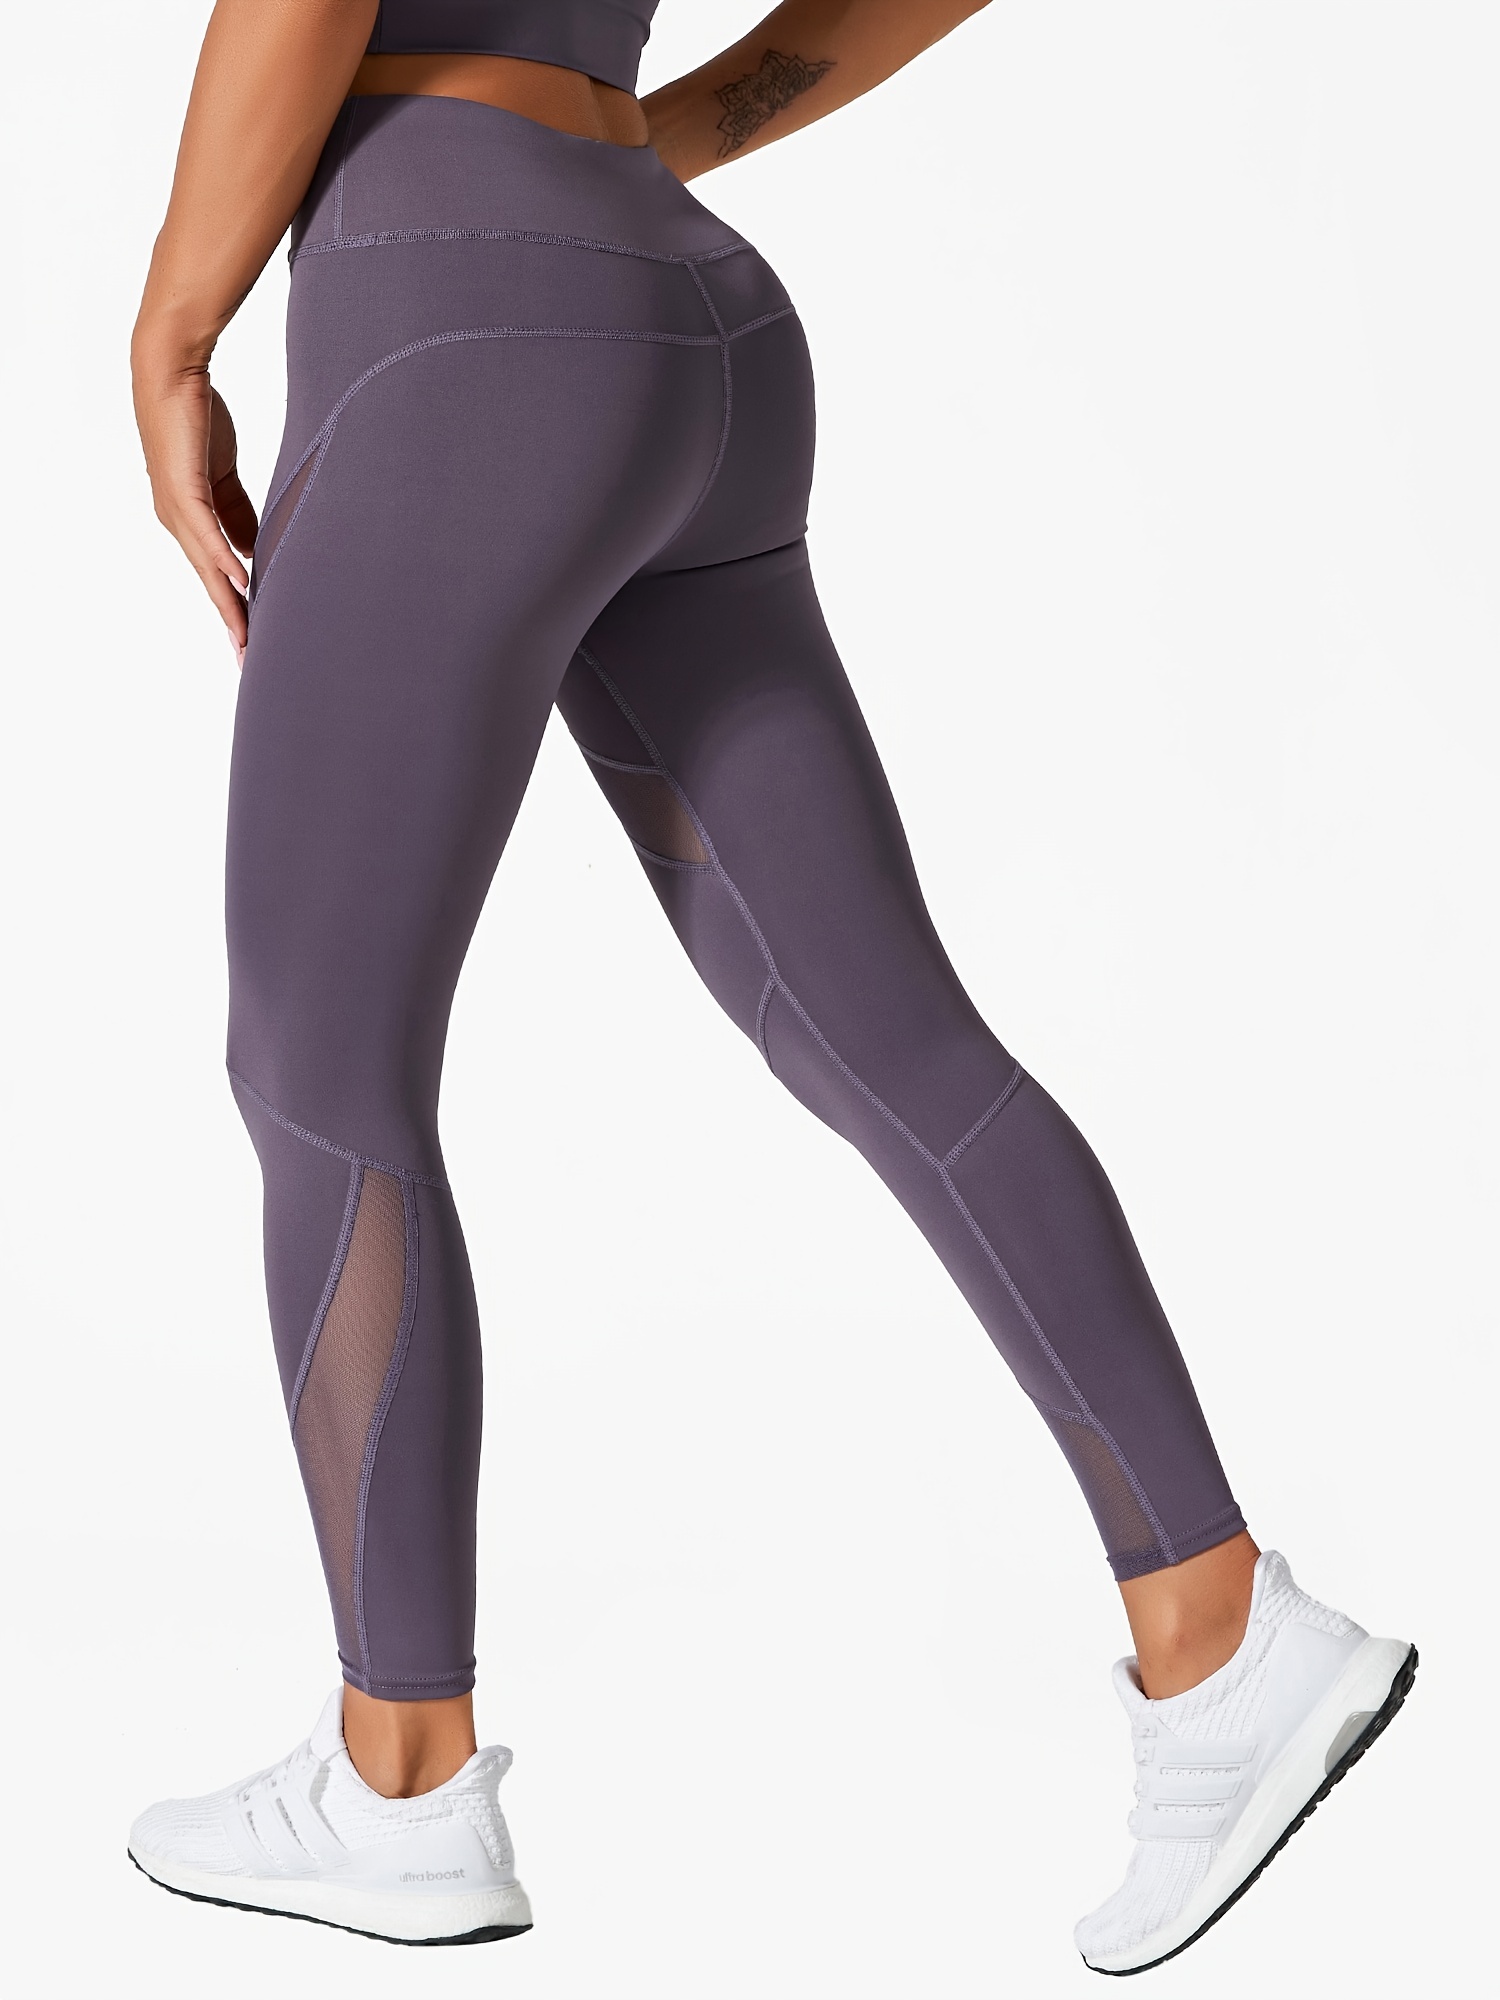 LANTECH-Pantalones de yoga para mujer, leggings elásticos para correr sin  costura, medias de compresión y control de abdomen para gimnasia y fitness  